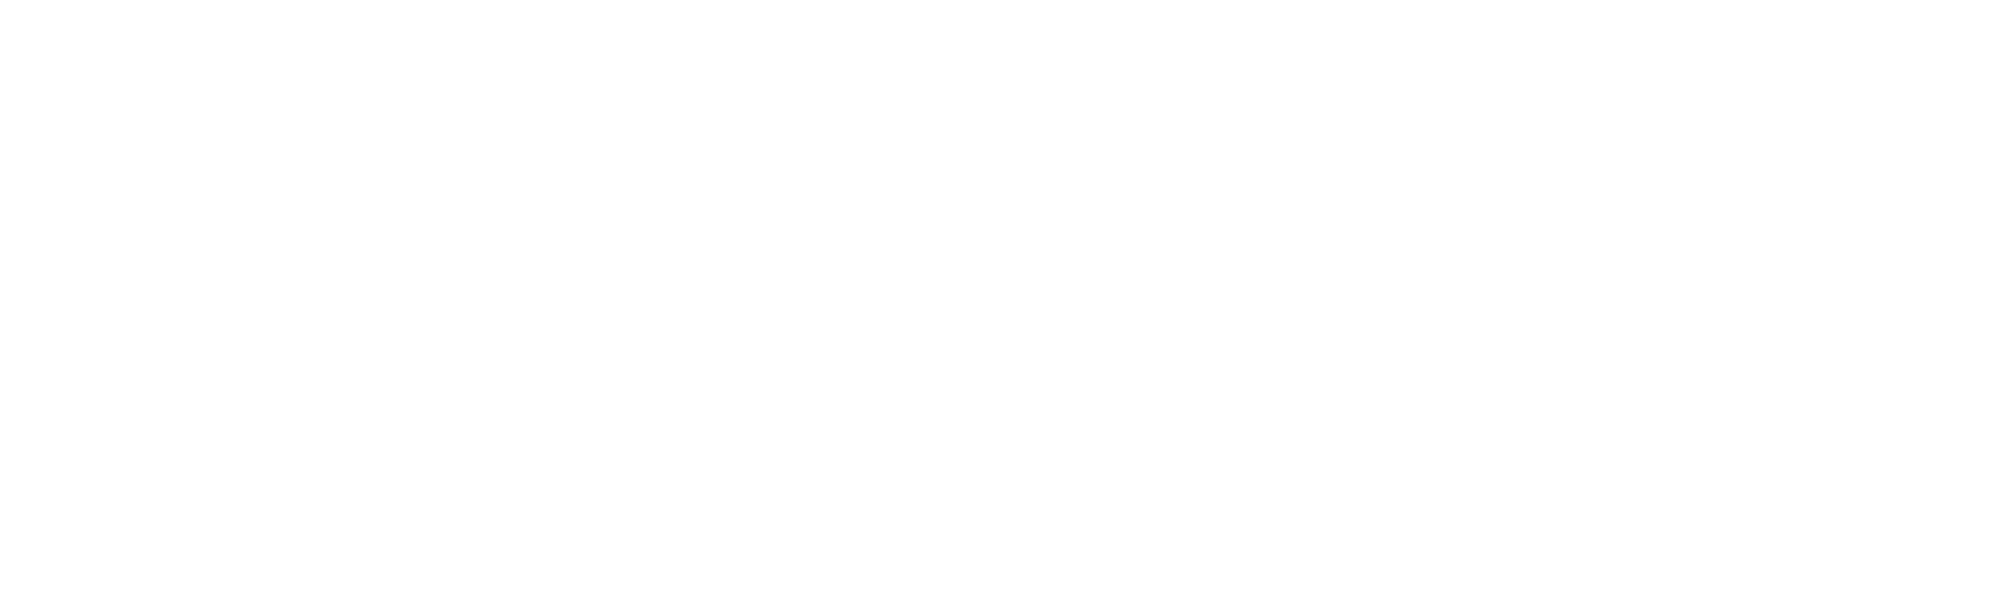 Nova Gorica and Gorizia – European Capital of Culture 2025